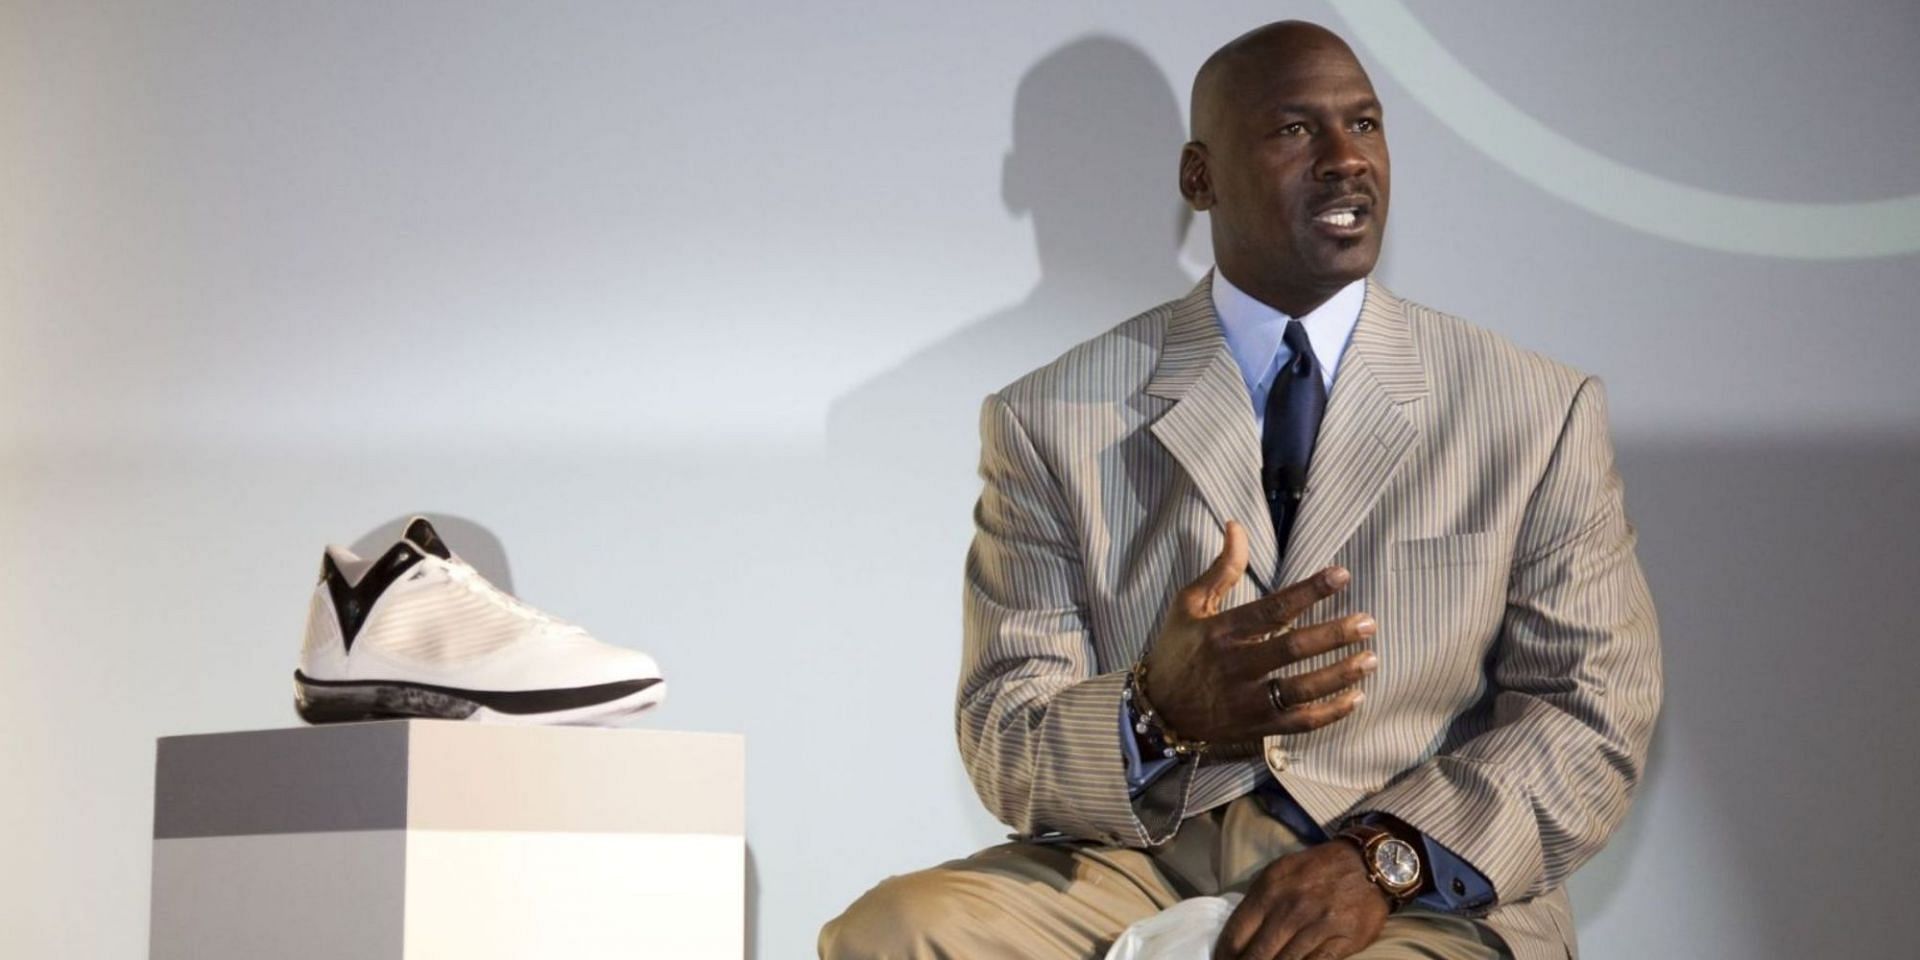 Michael Jordan with Nike&#039;s Air Jordan sneakers. (Image via Getty Images)